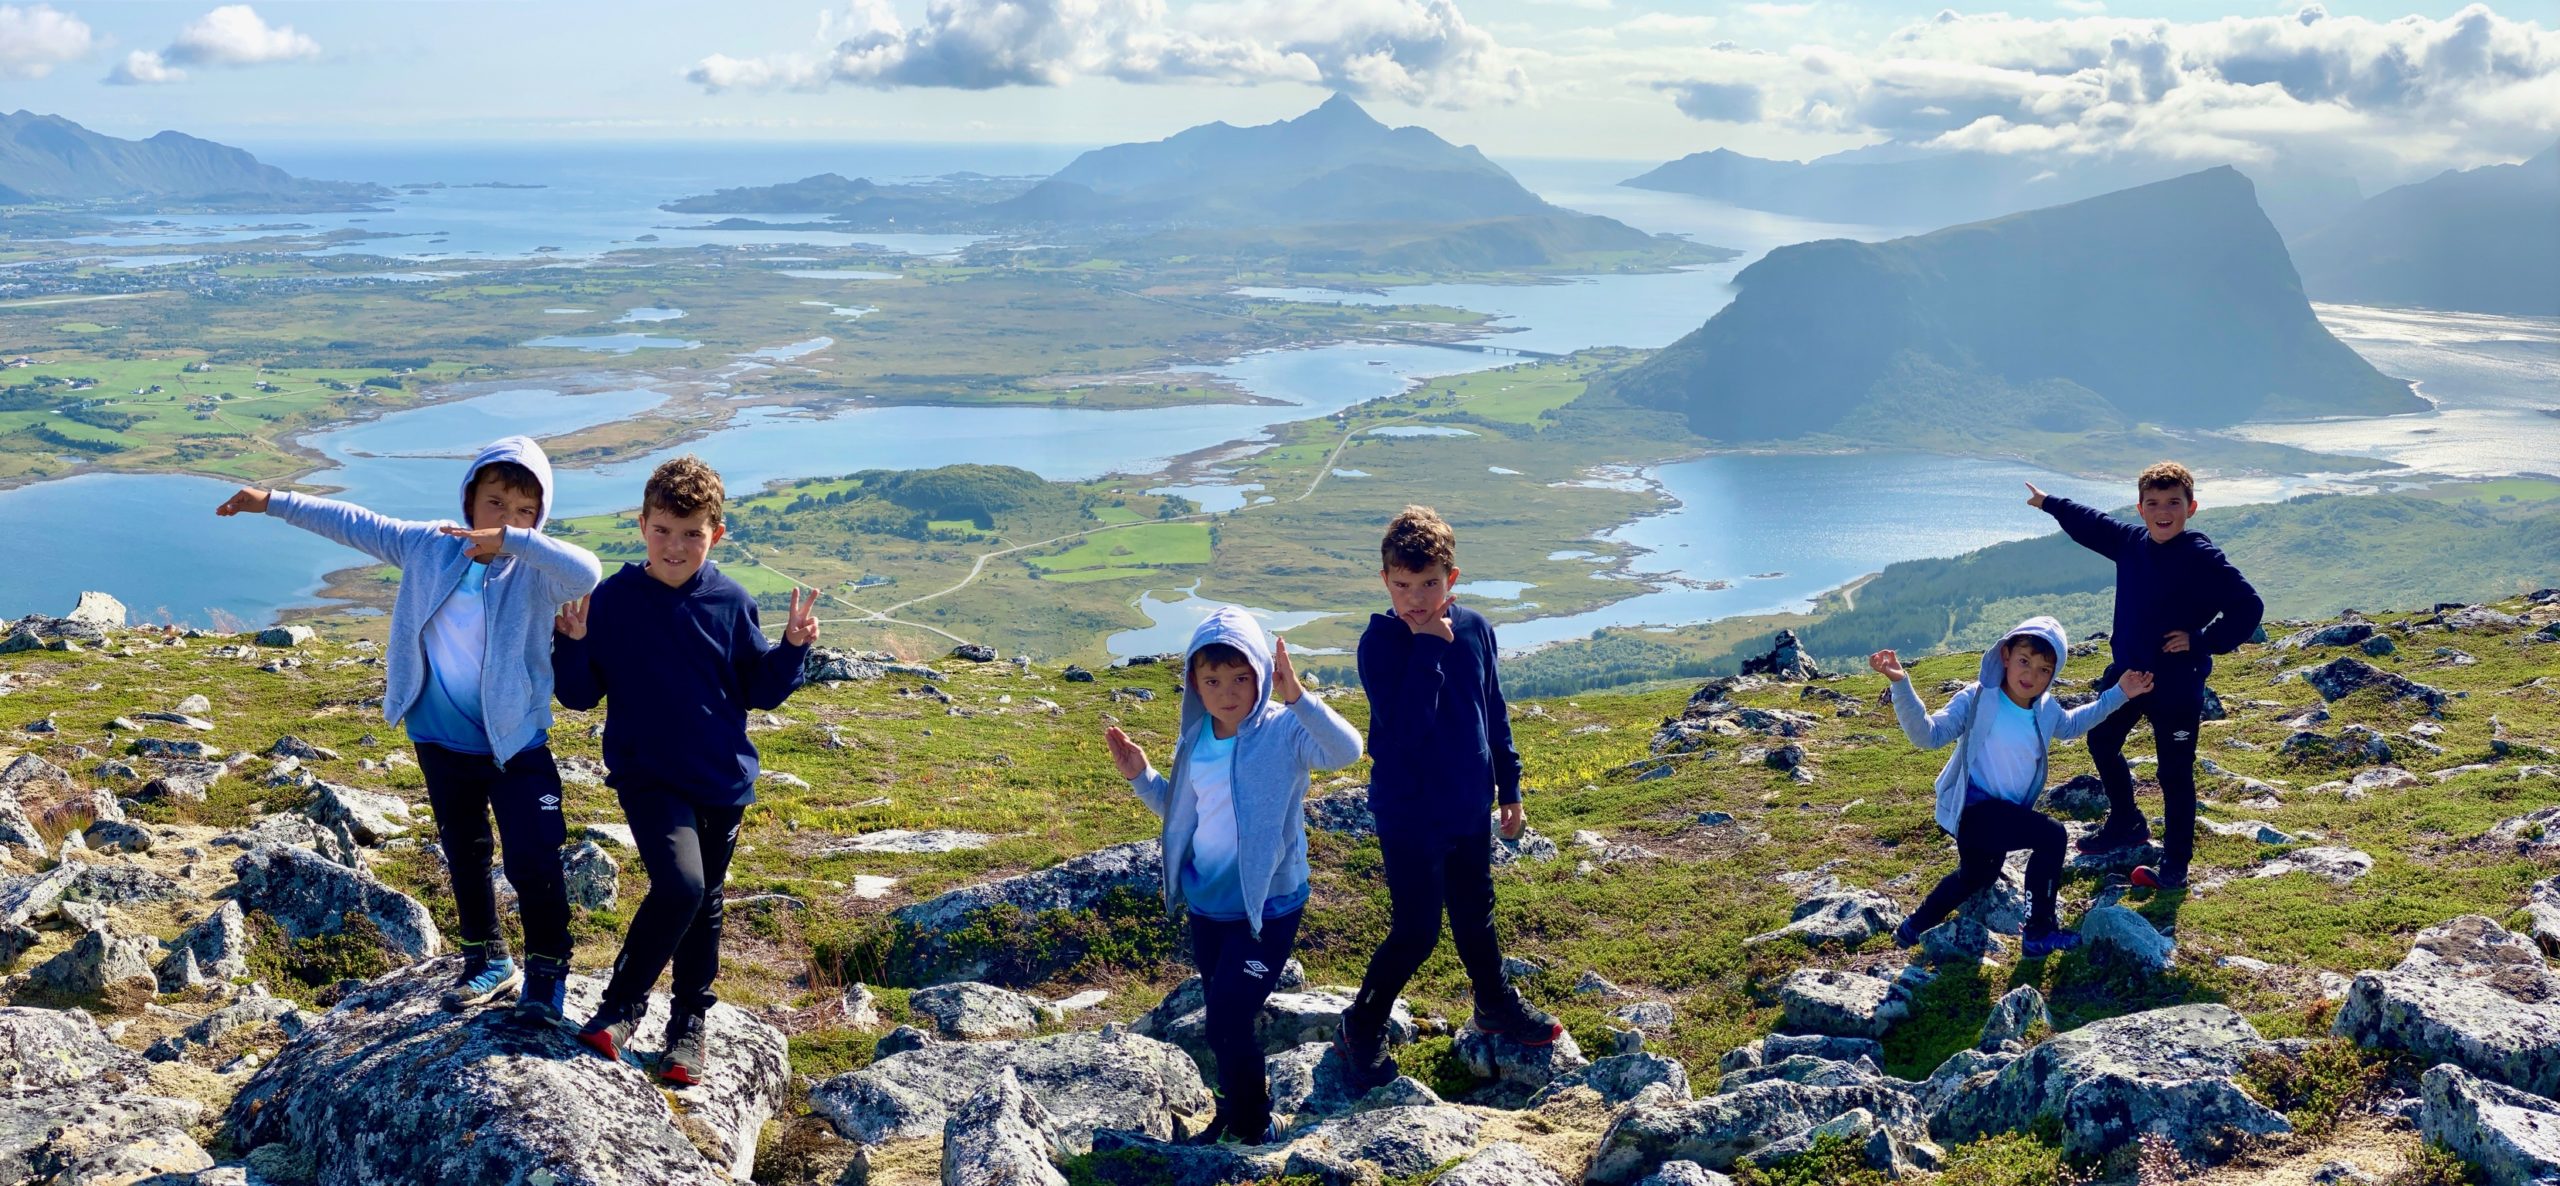 Hiking z dziećmi. 10 rad jak przeżyć rodzinną wycieczkę w góry i nie oszaleć.